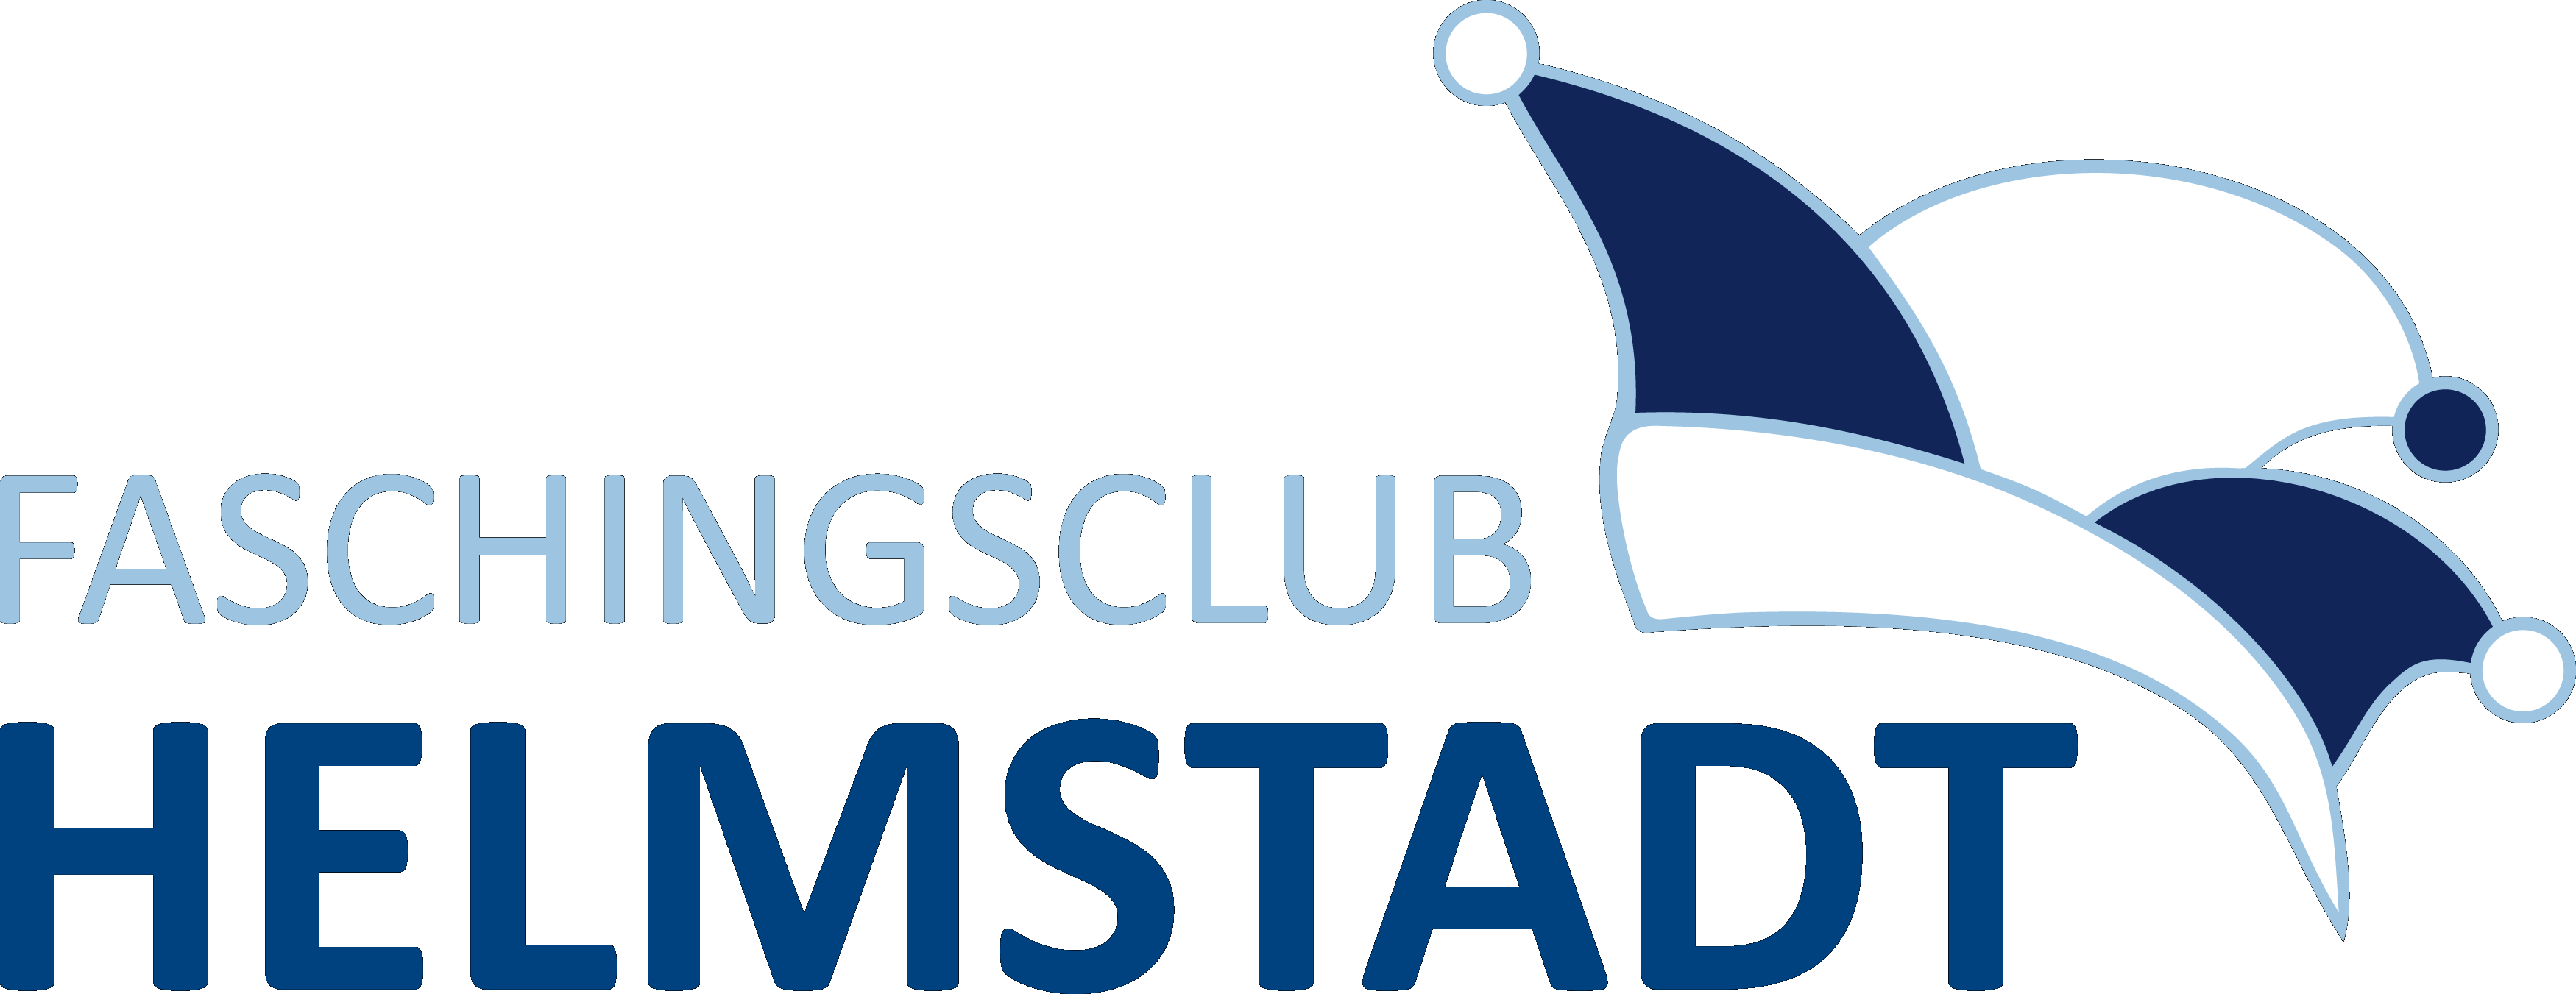 Faschingsclub Helmstadt Logo